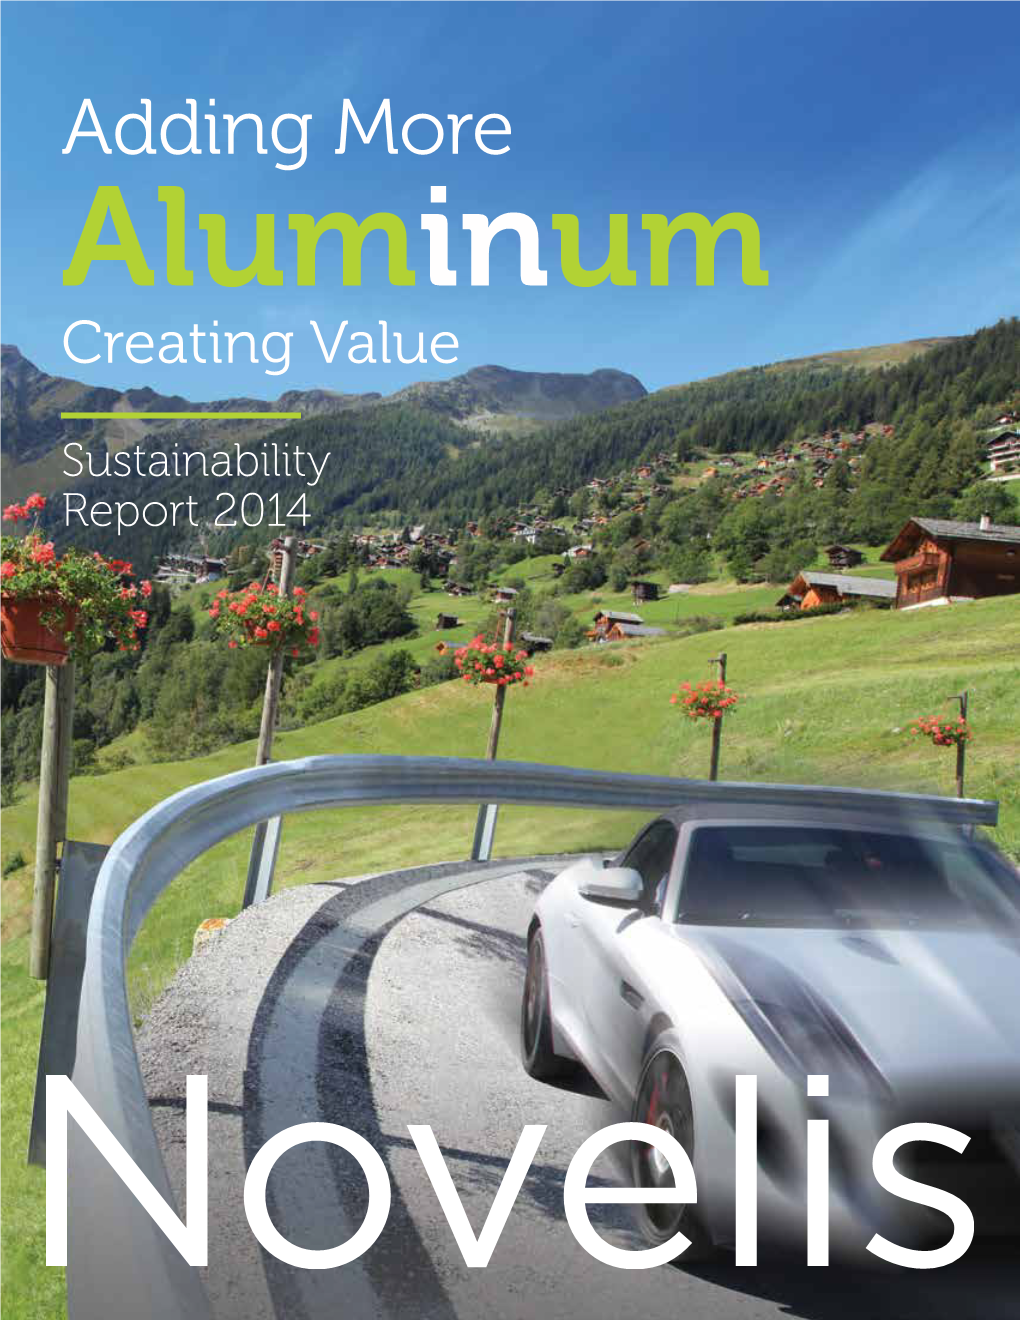 Adding More Aluminum Creating Value